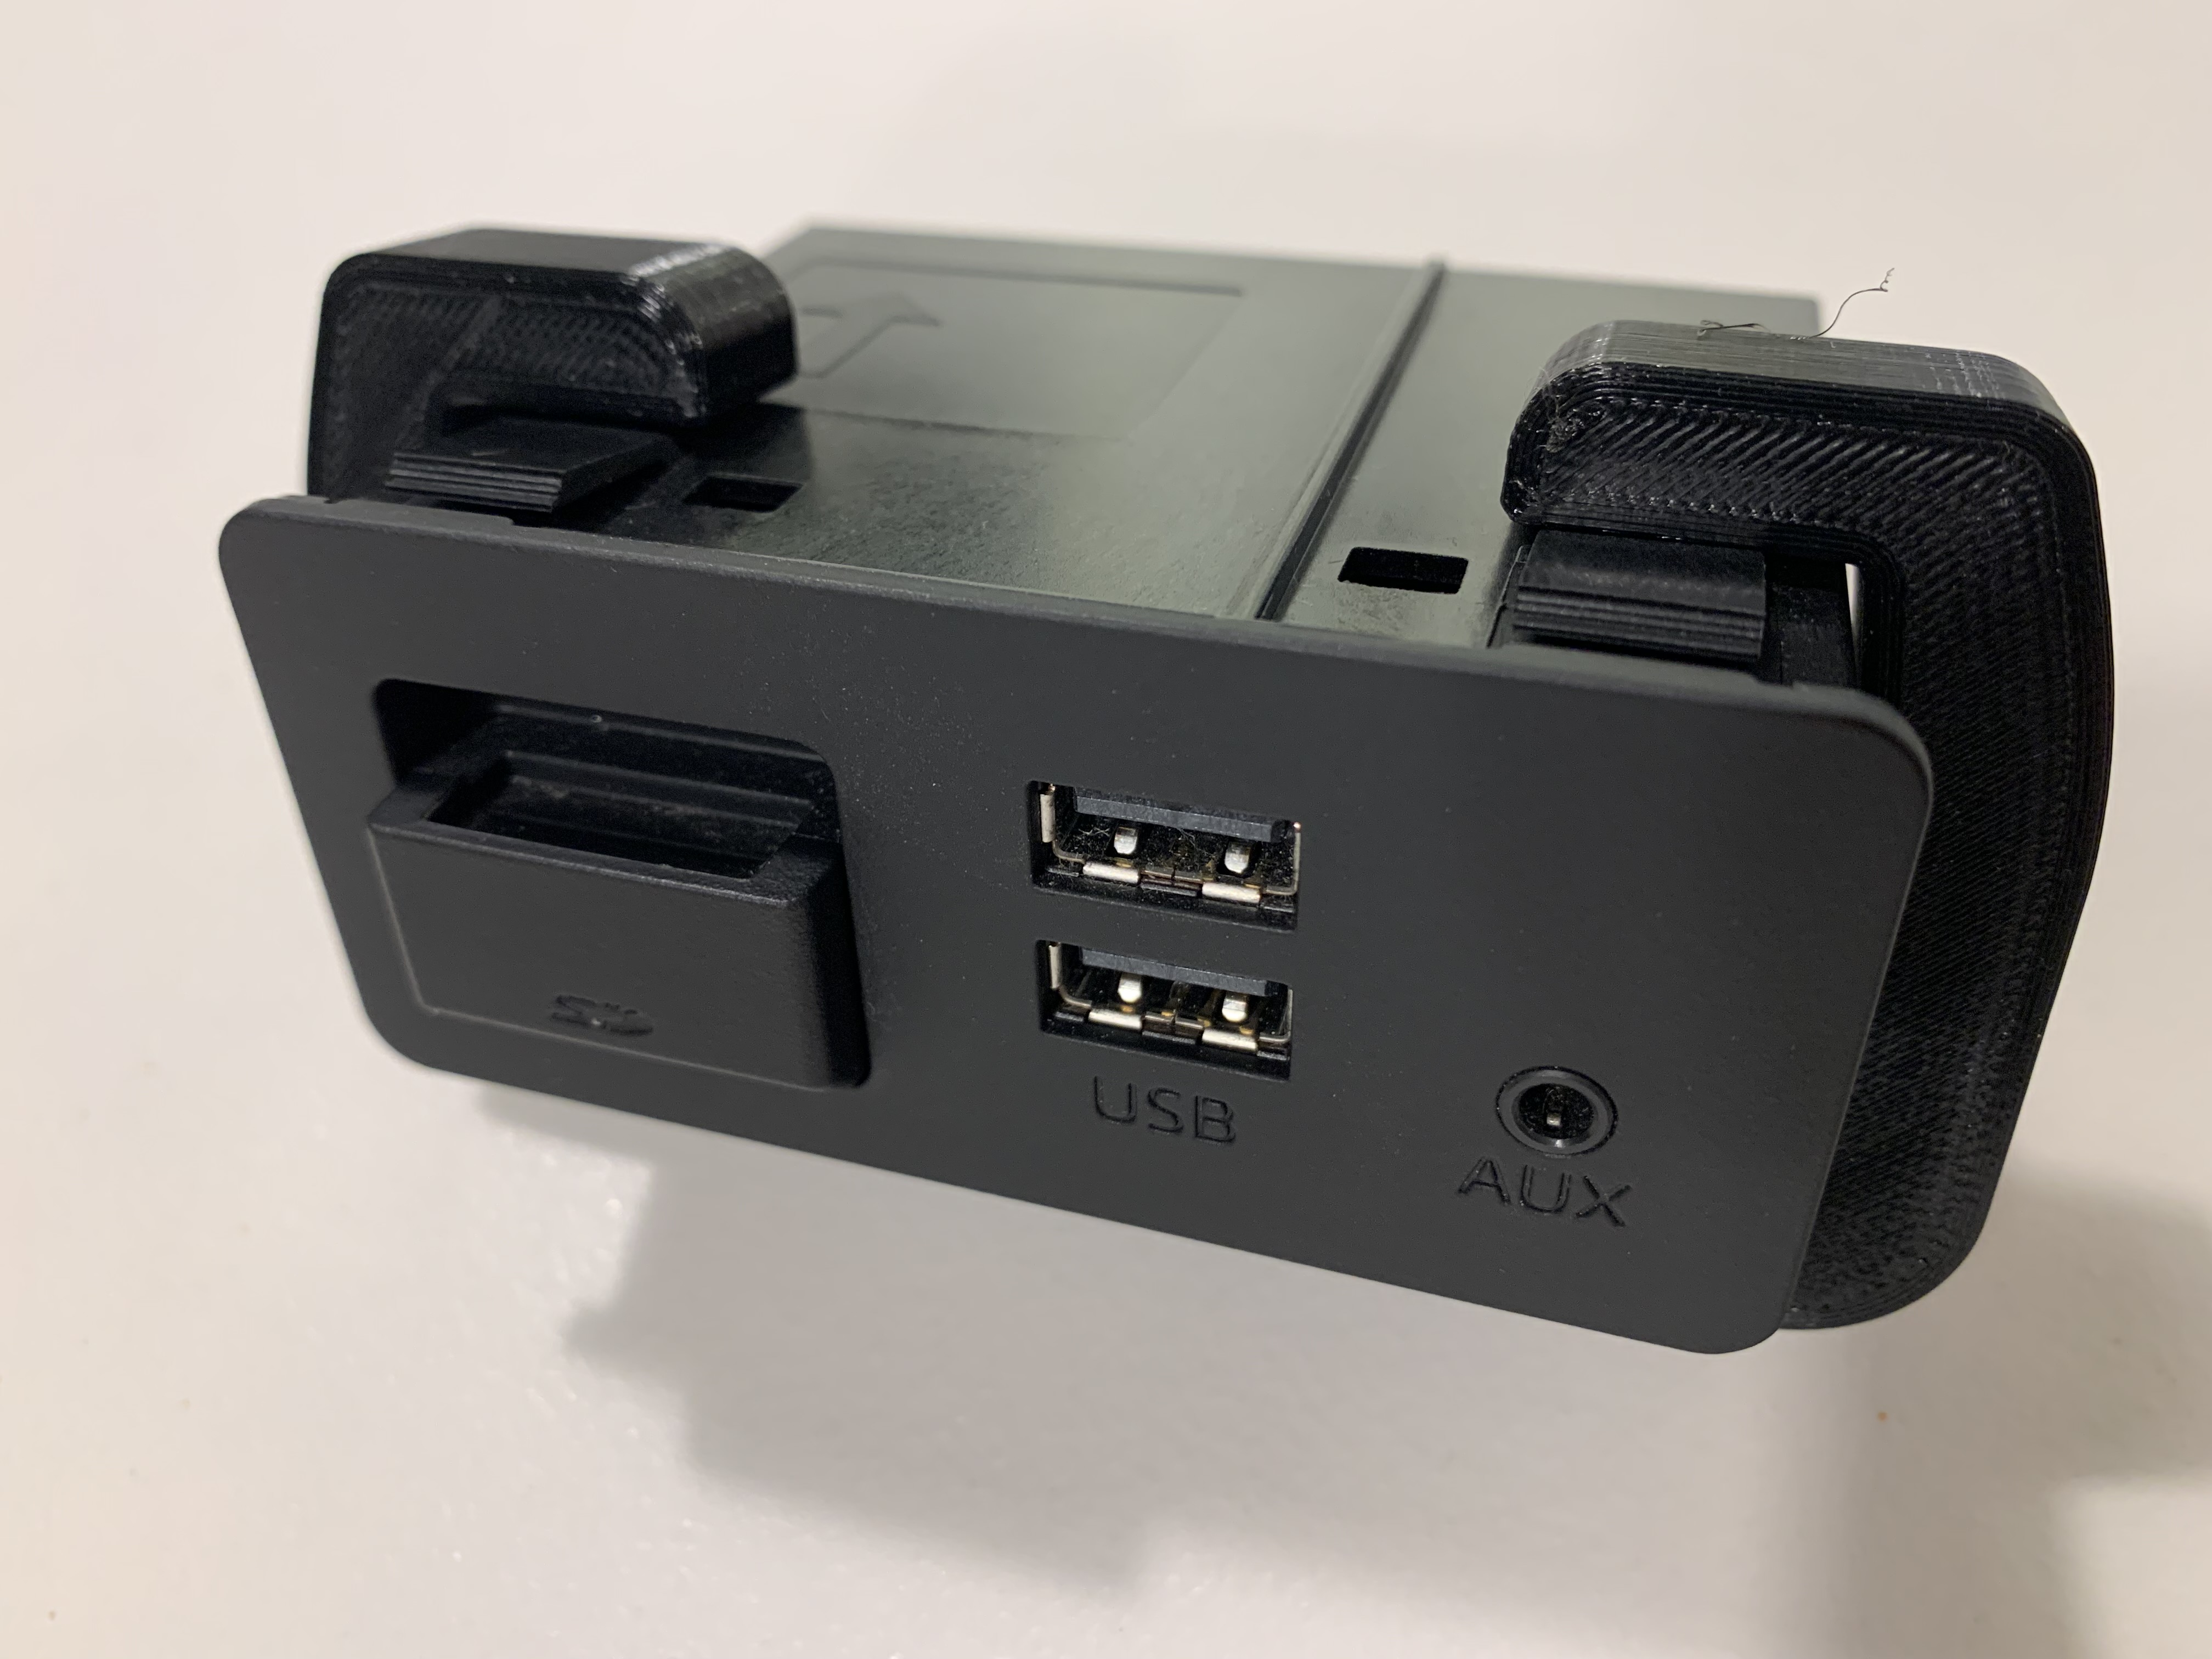 Mazda USB hub removal tool